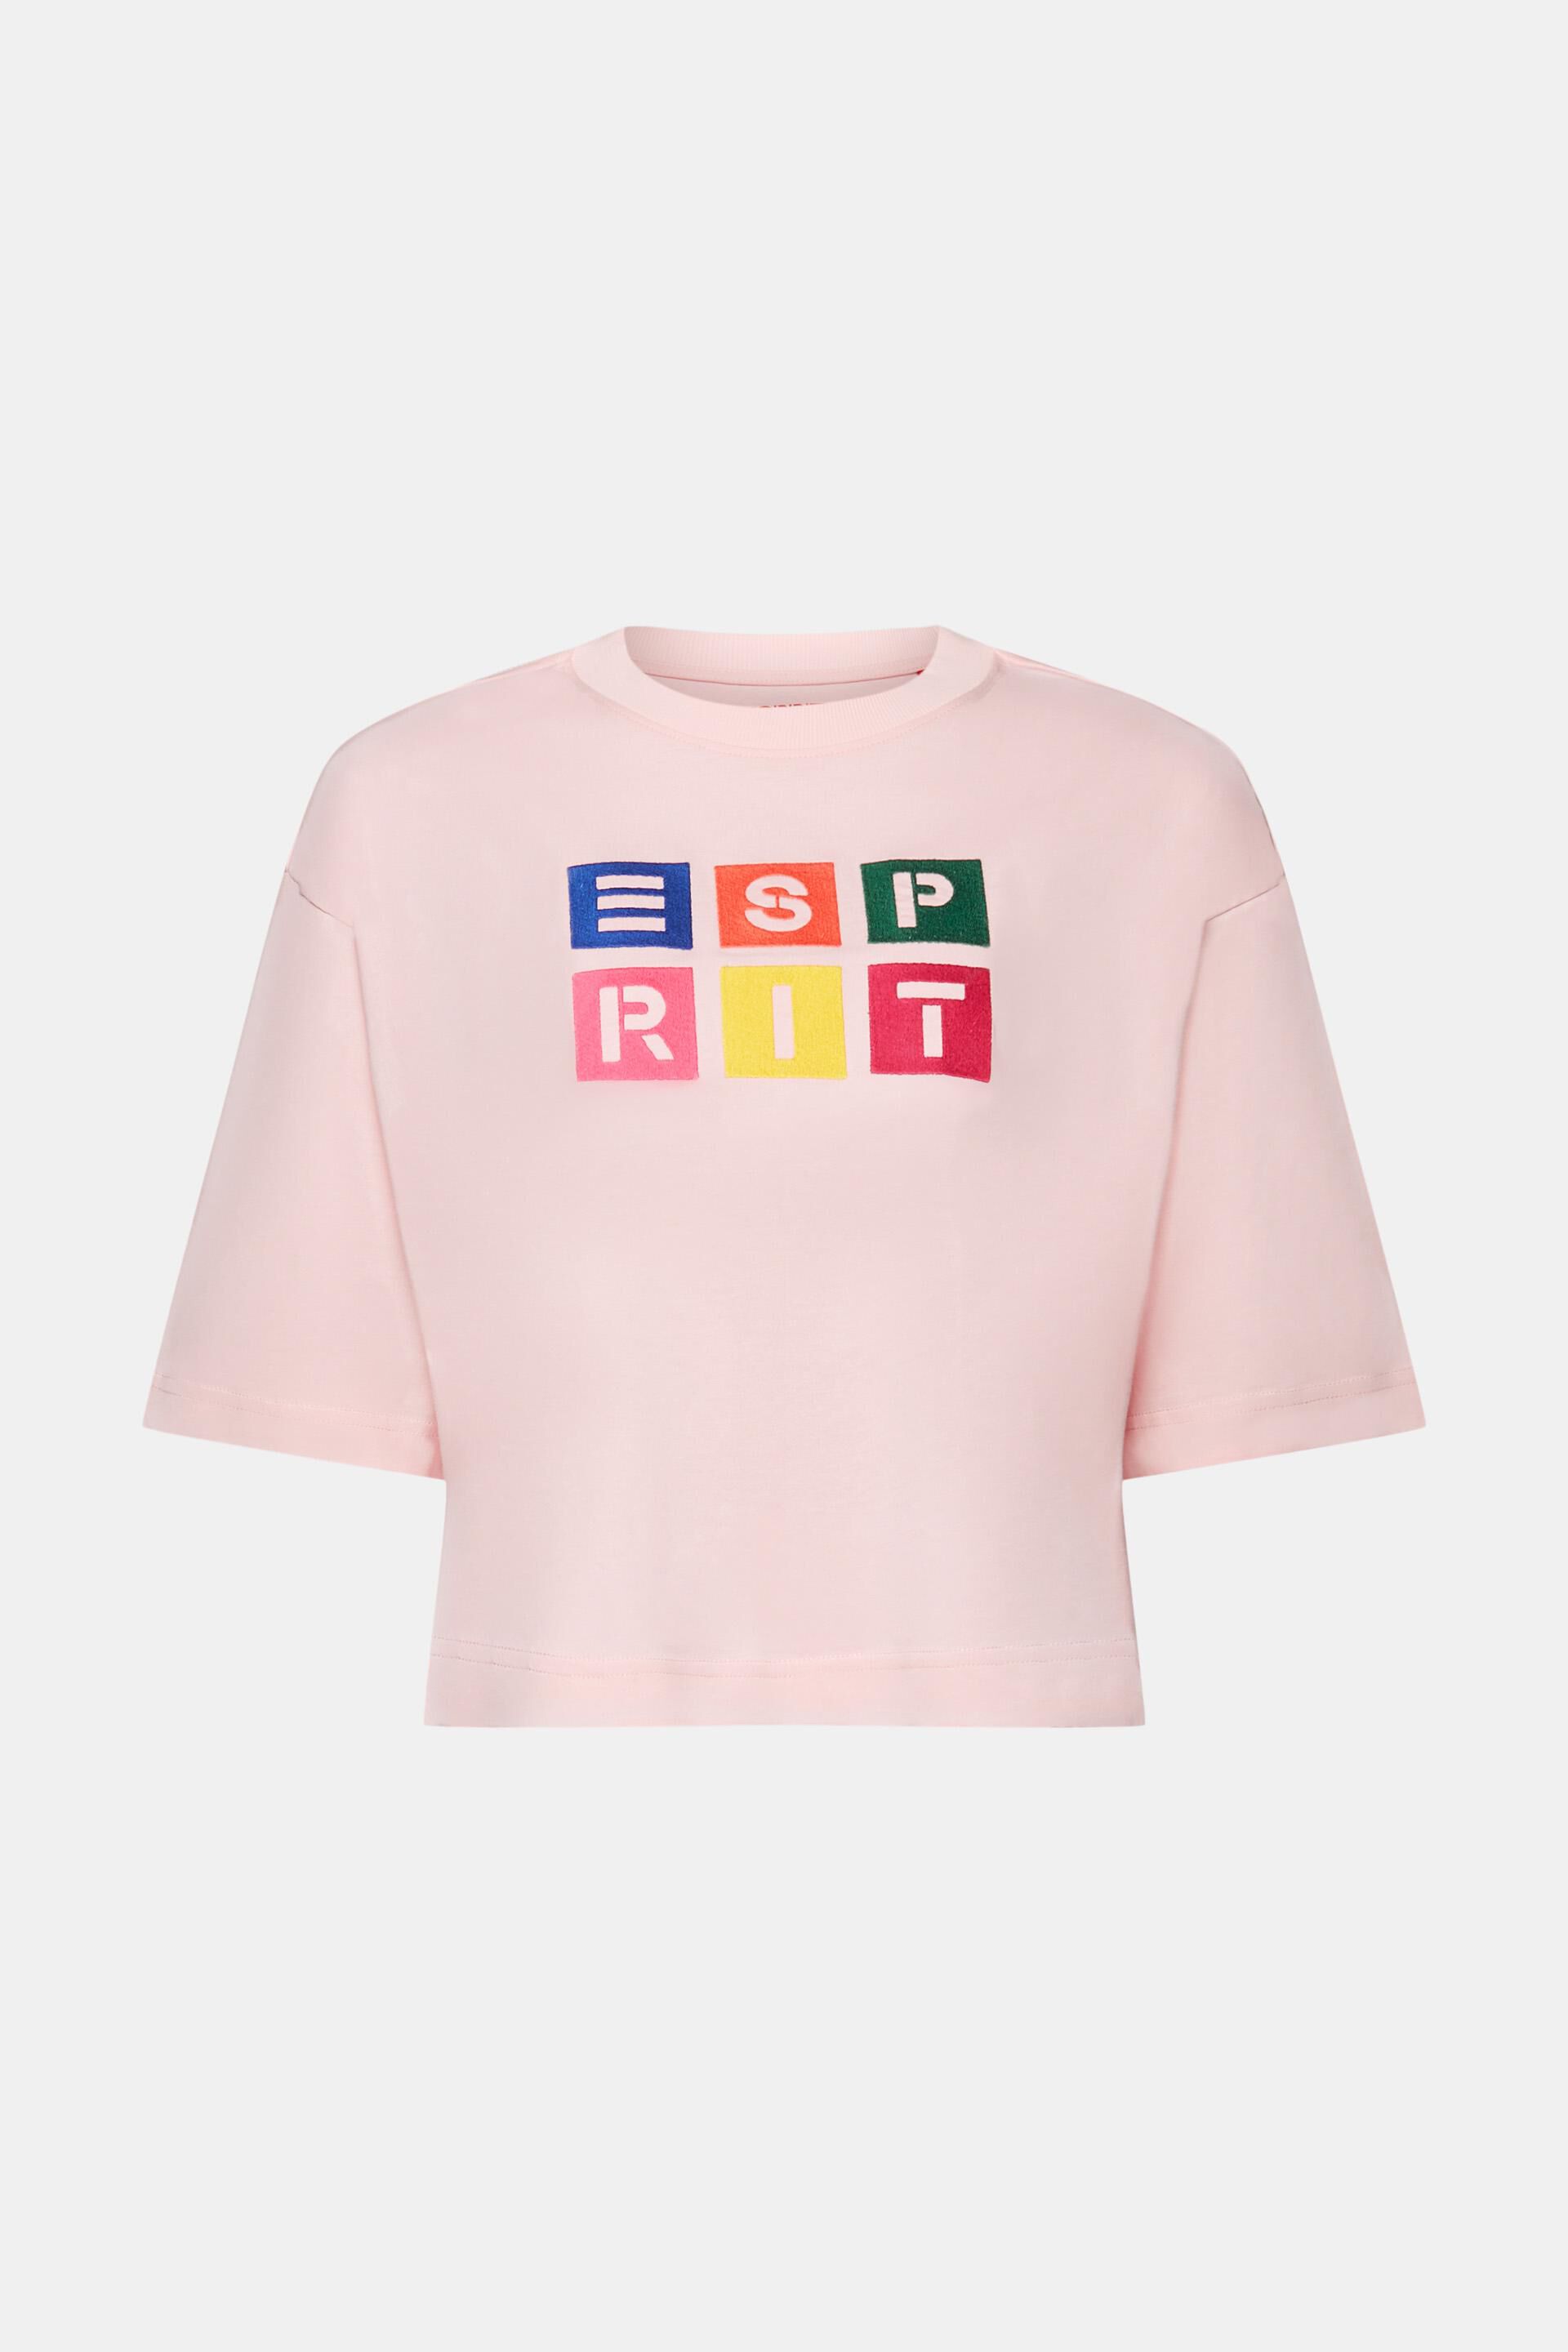 Esprit aufgesticktem Baumwolle Logo, % mit T-Shirt 100